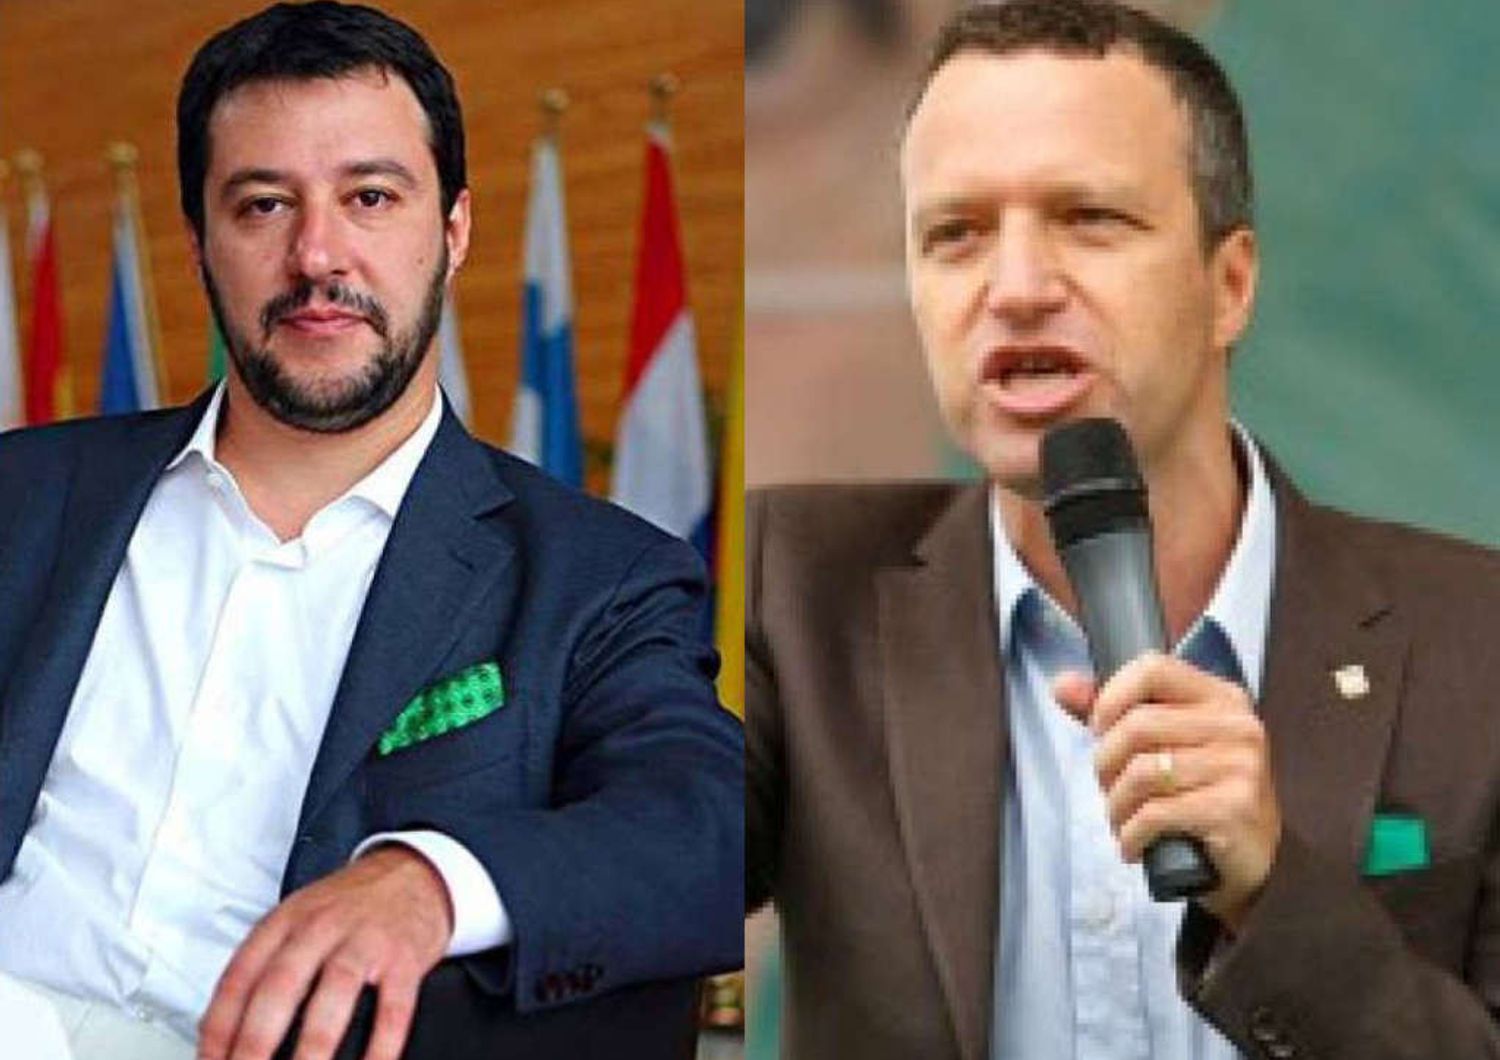 Tosi: Salvini dittatore della LegaE lui: "Non rispondo a insulti"